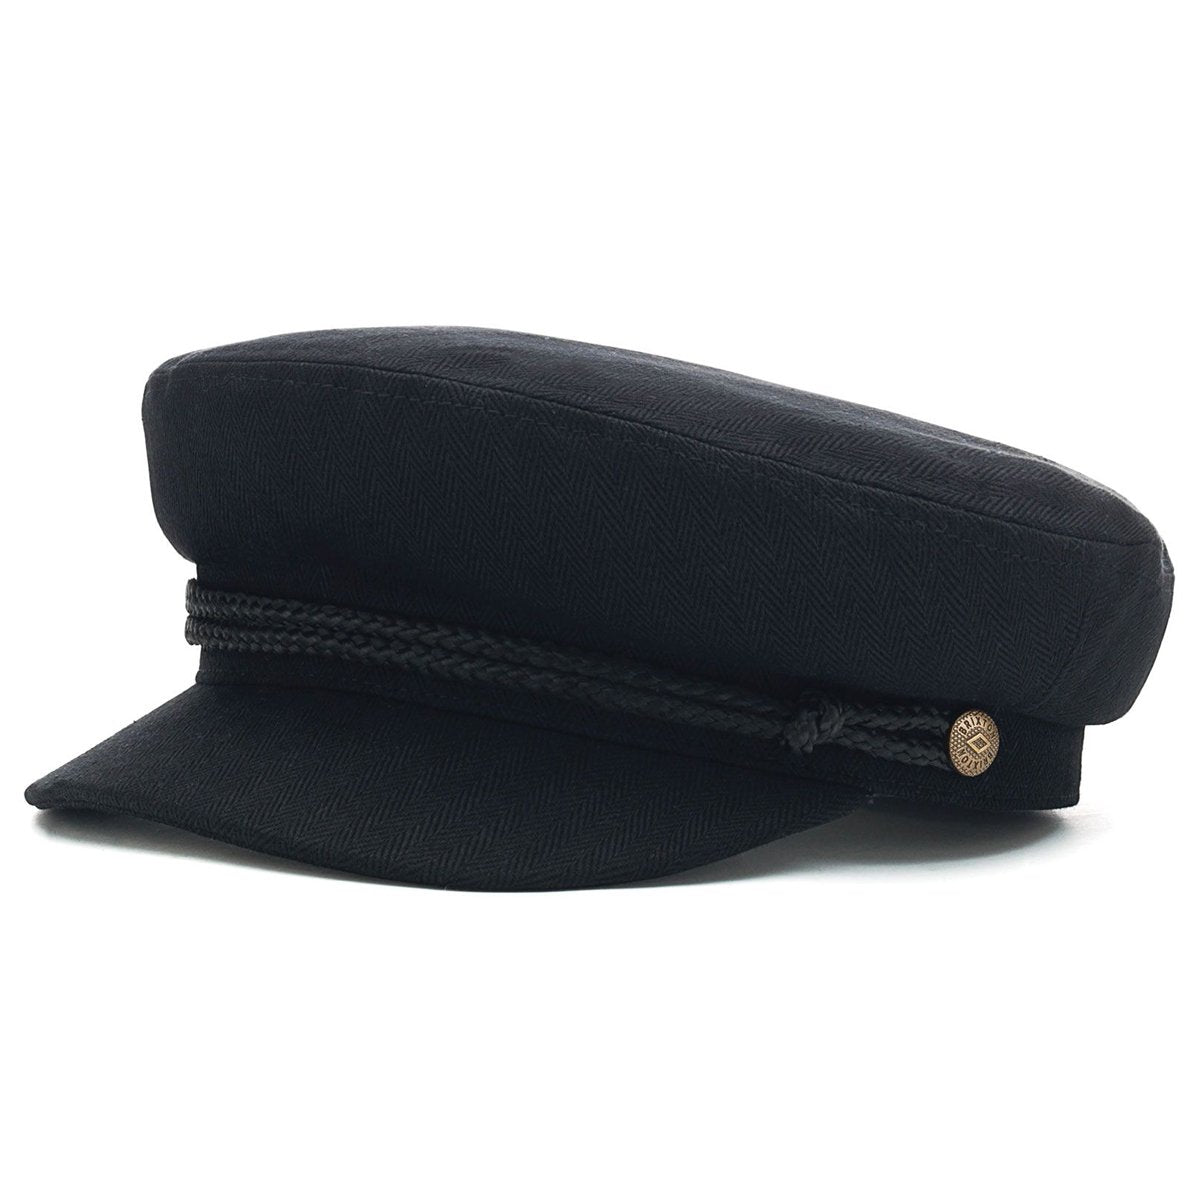 Brixton Fiddler Hat - Black - LG image 1